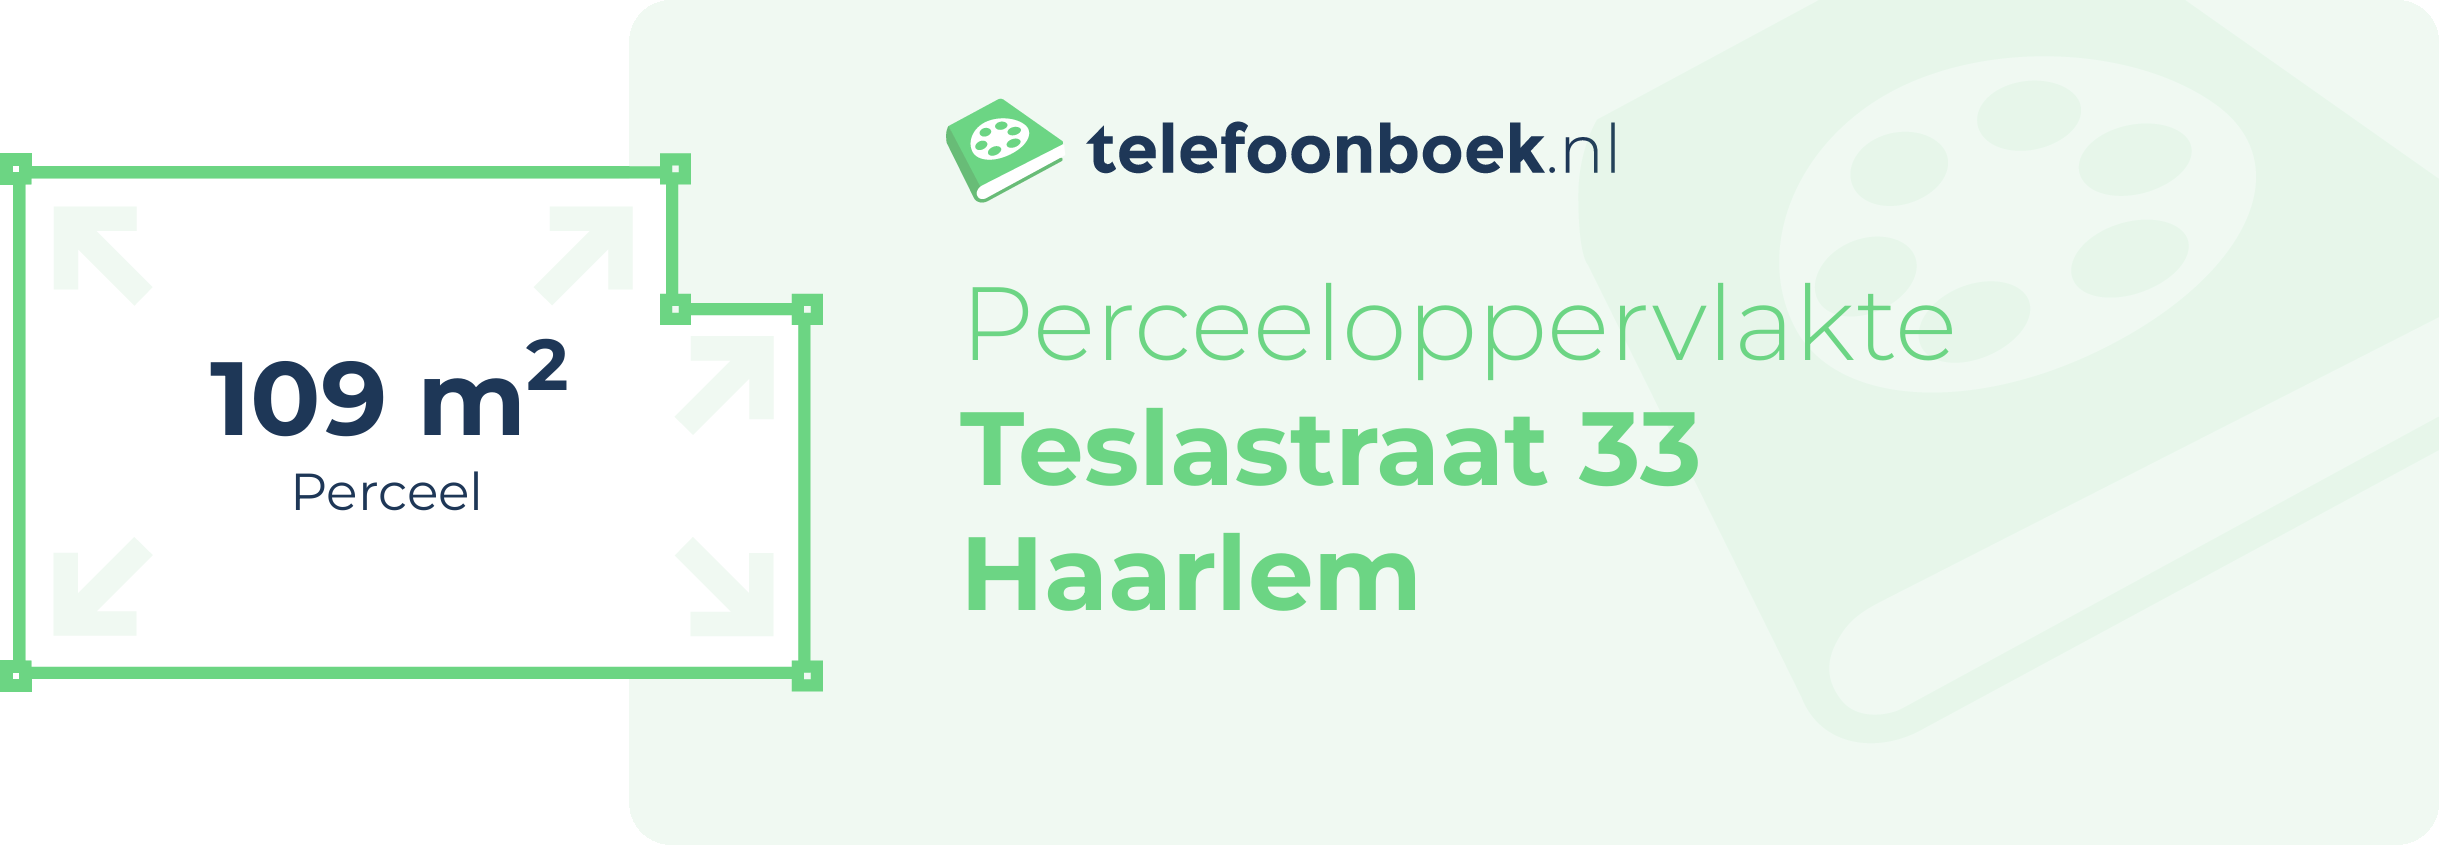 Perceeloppervlakte Teslastraat 33 Haarlem